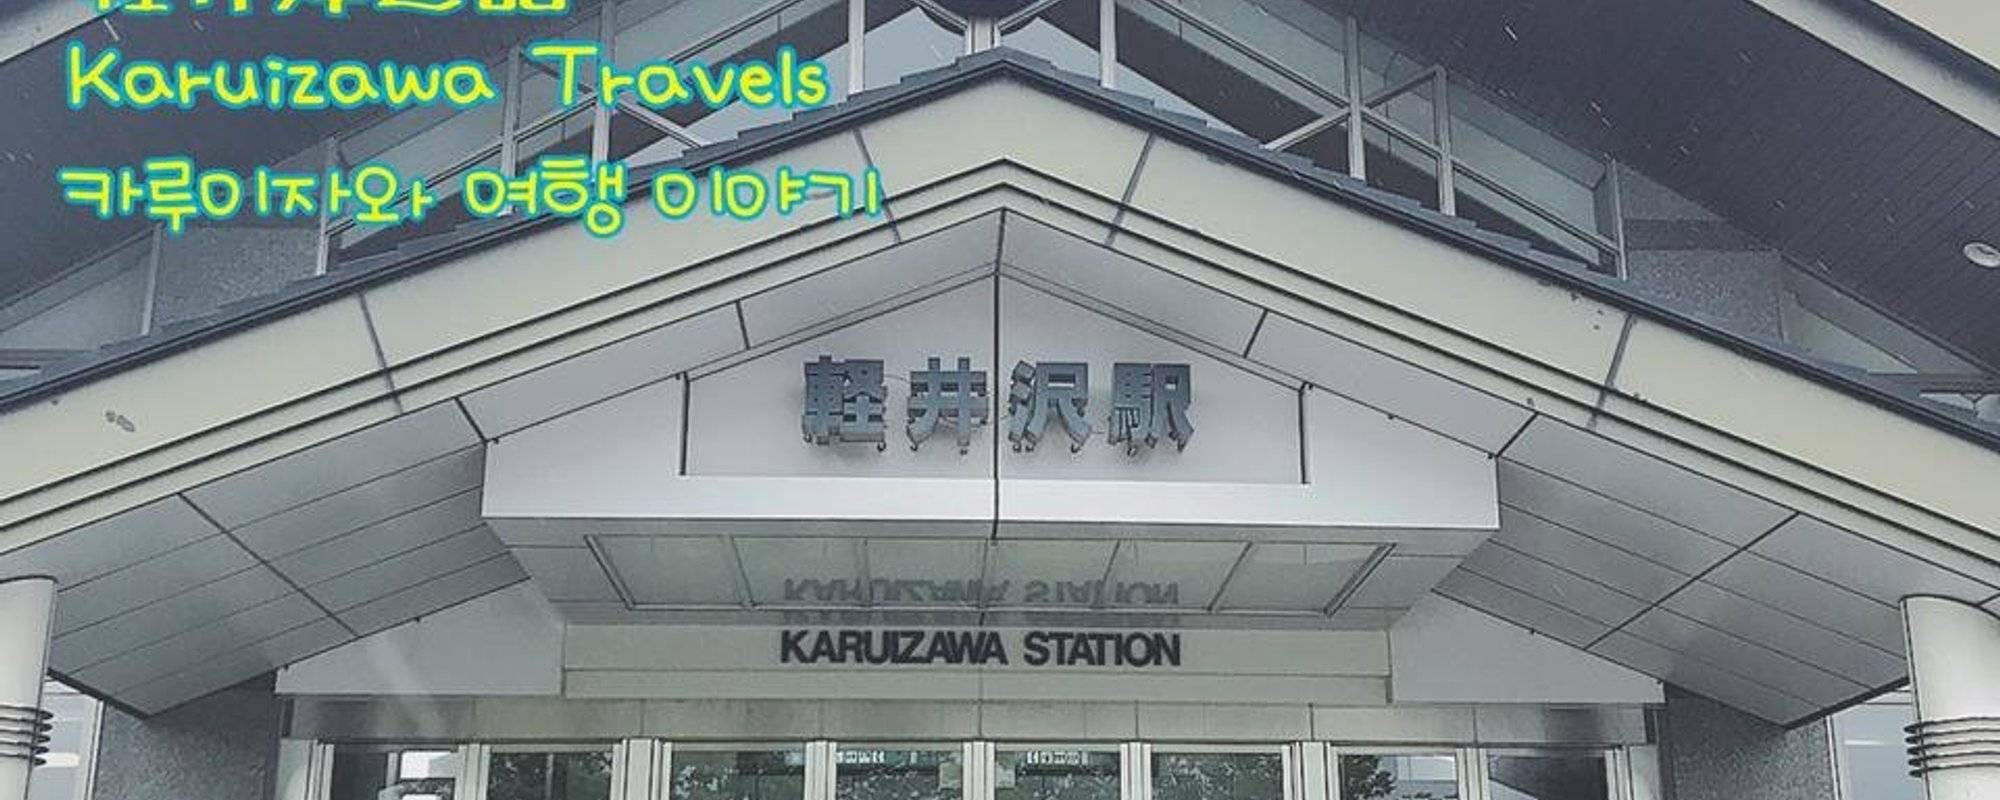 5月兩日一夜輕井澤遊記/ 2days 1night trip to Karuizawa in May/ 5월 카루이자와 2박1일 여행 ulog#002